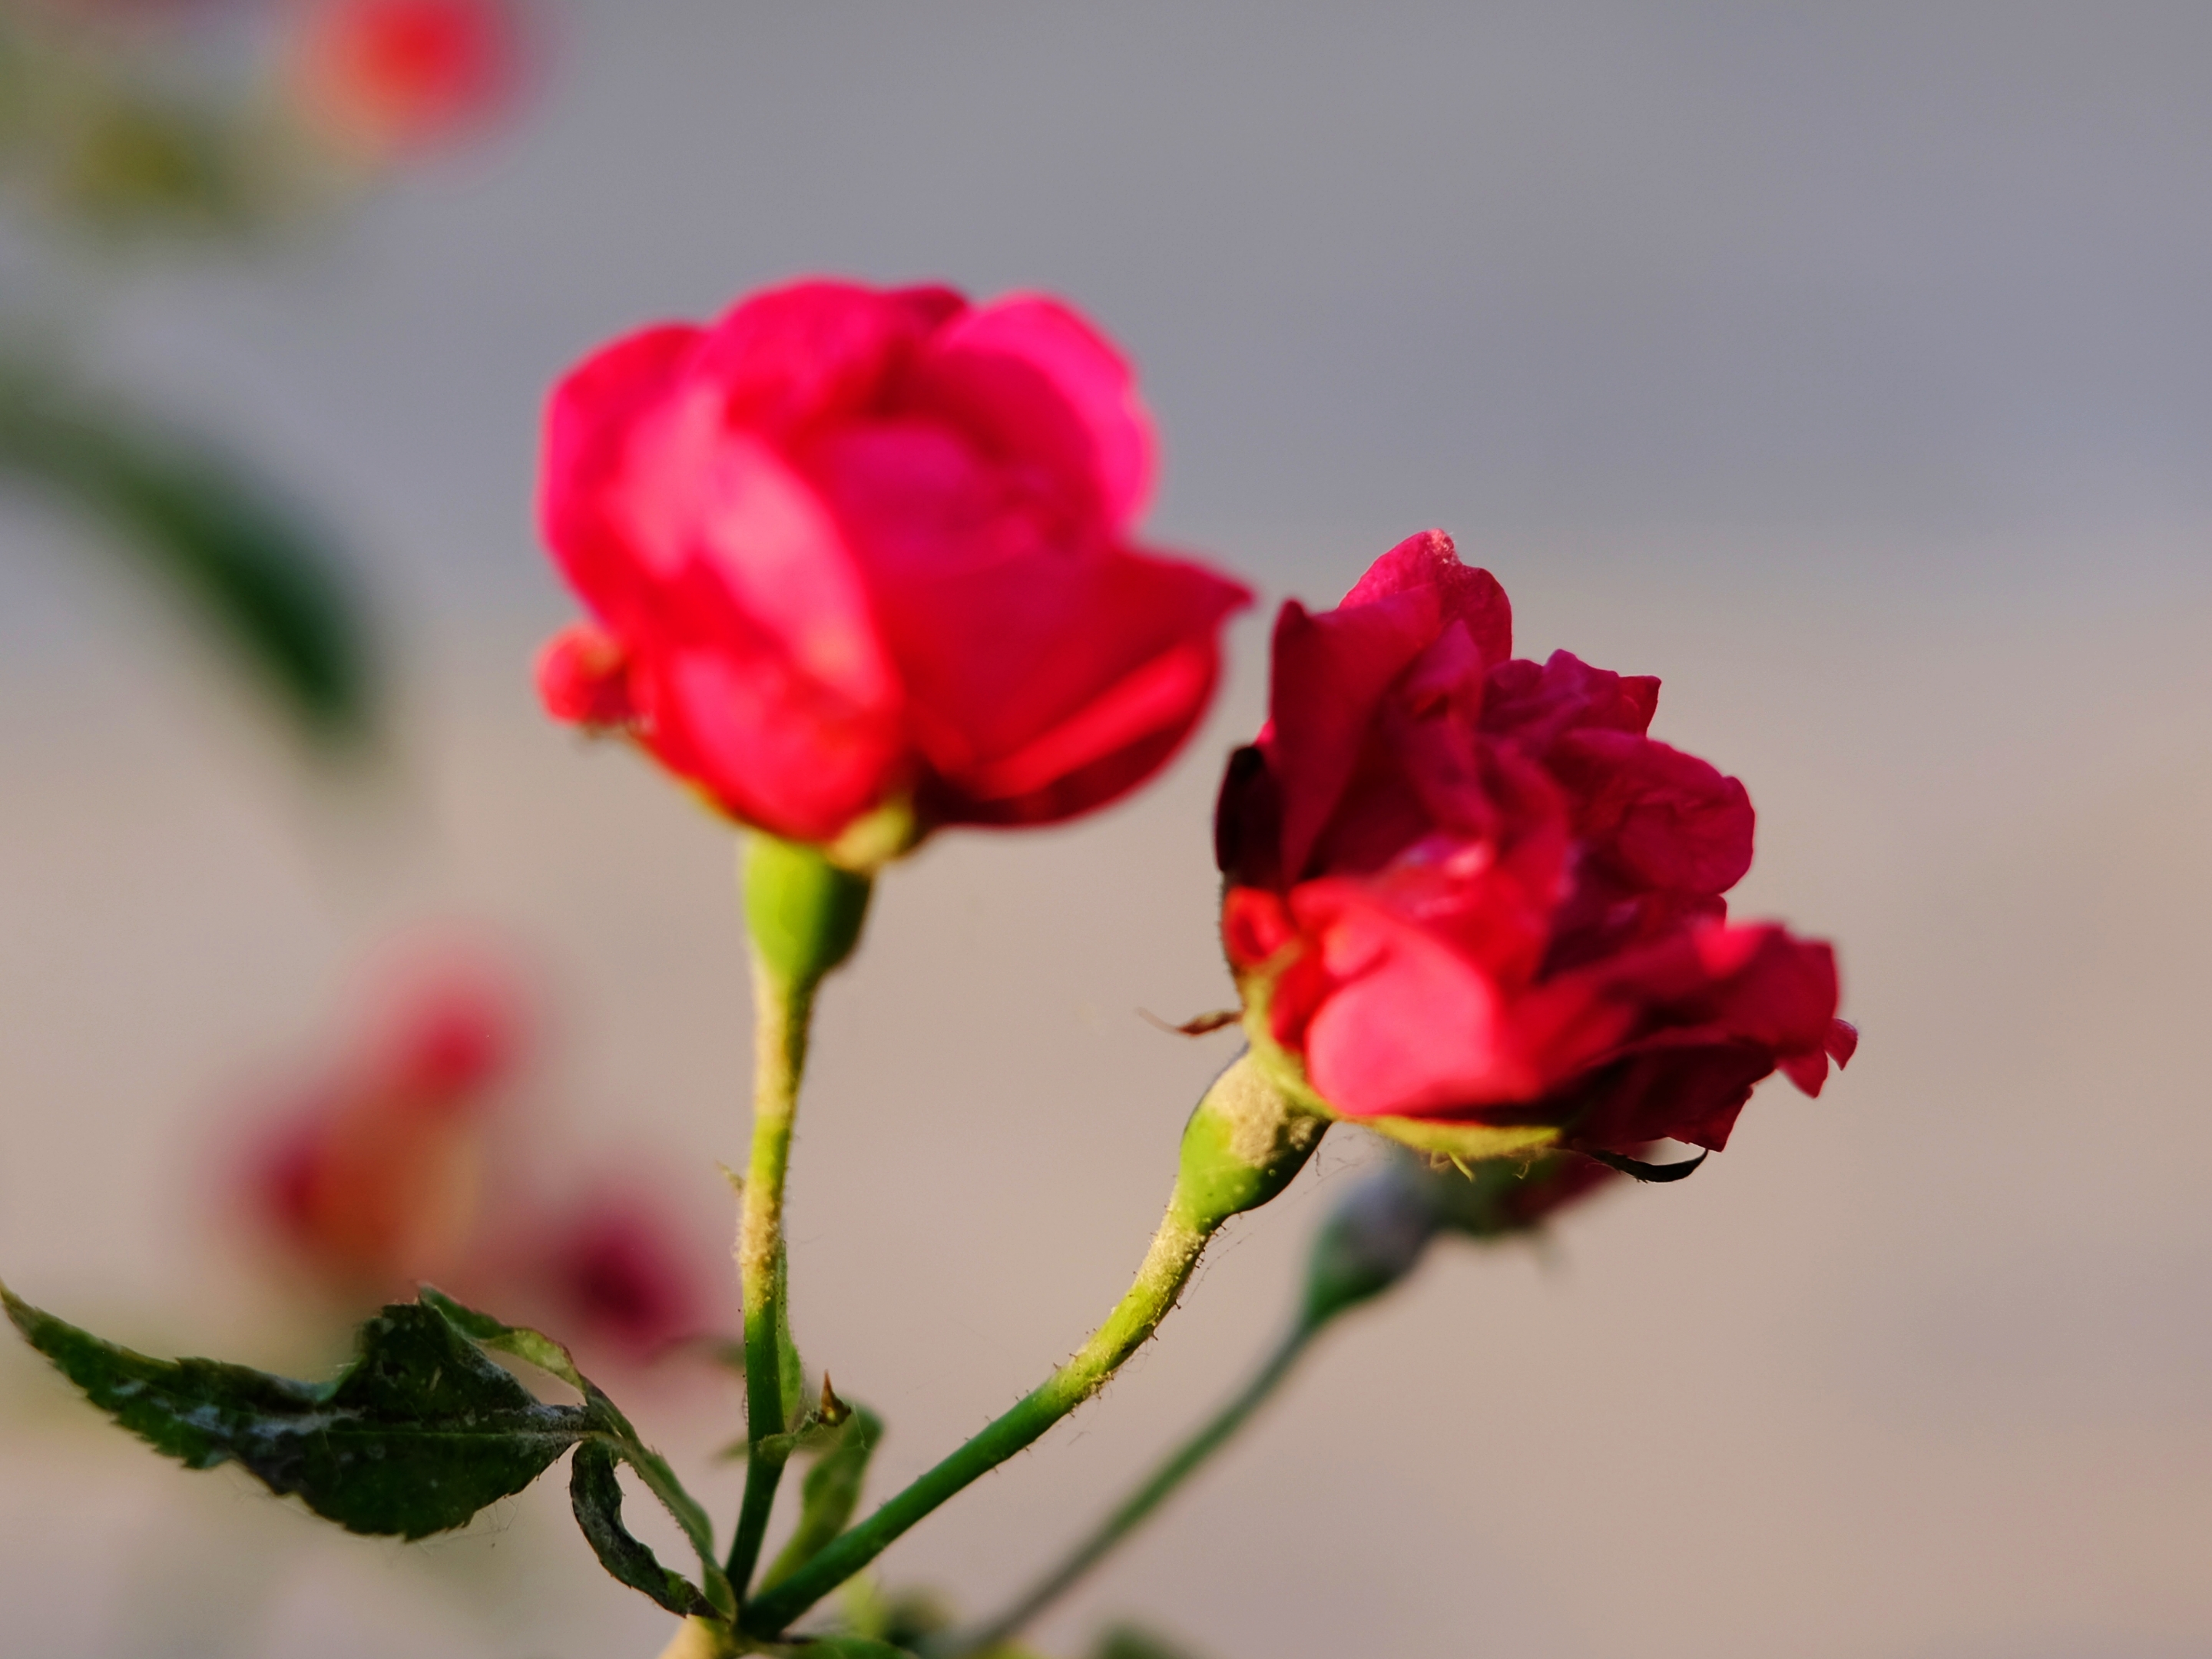 相关阅读  红蔷薇花语  来自网络 蔷薇花的花语寓意为爱恋, 而红色